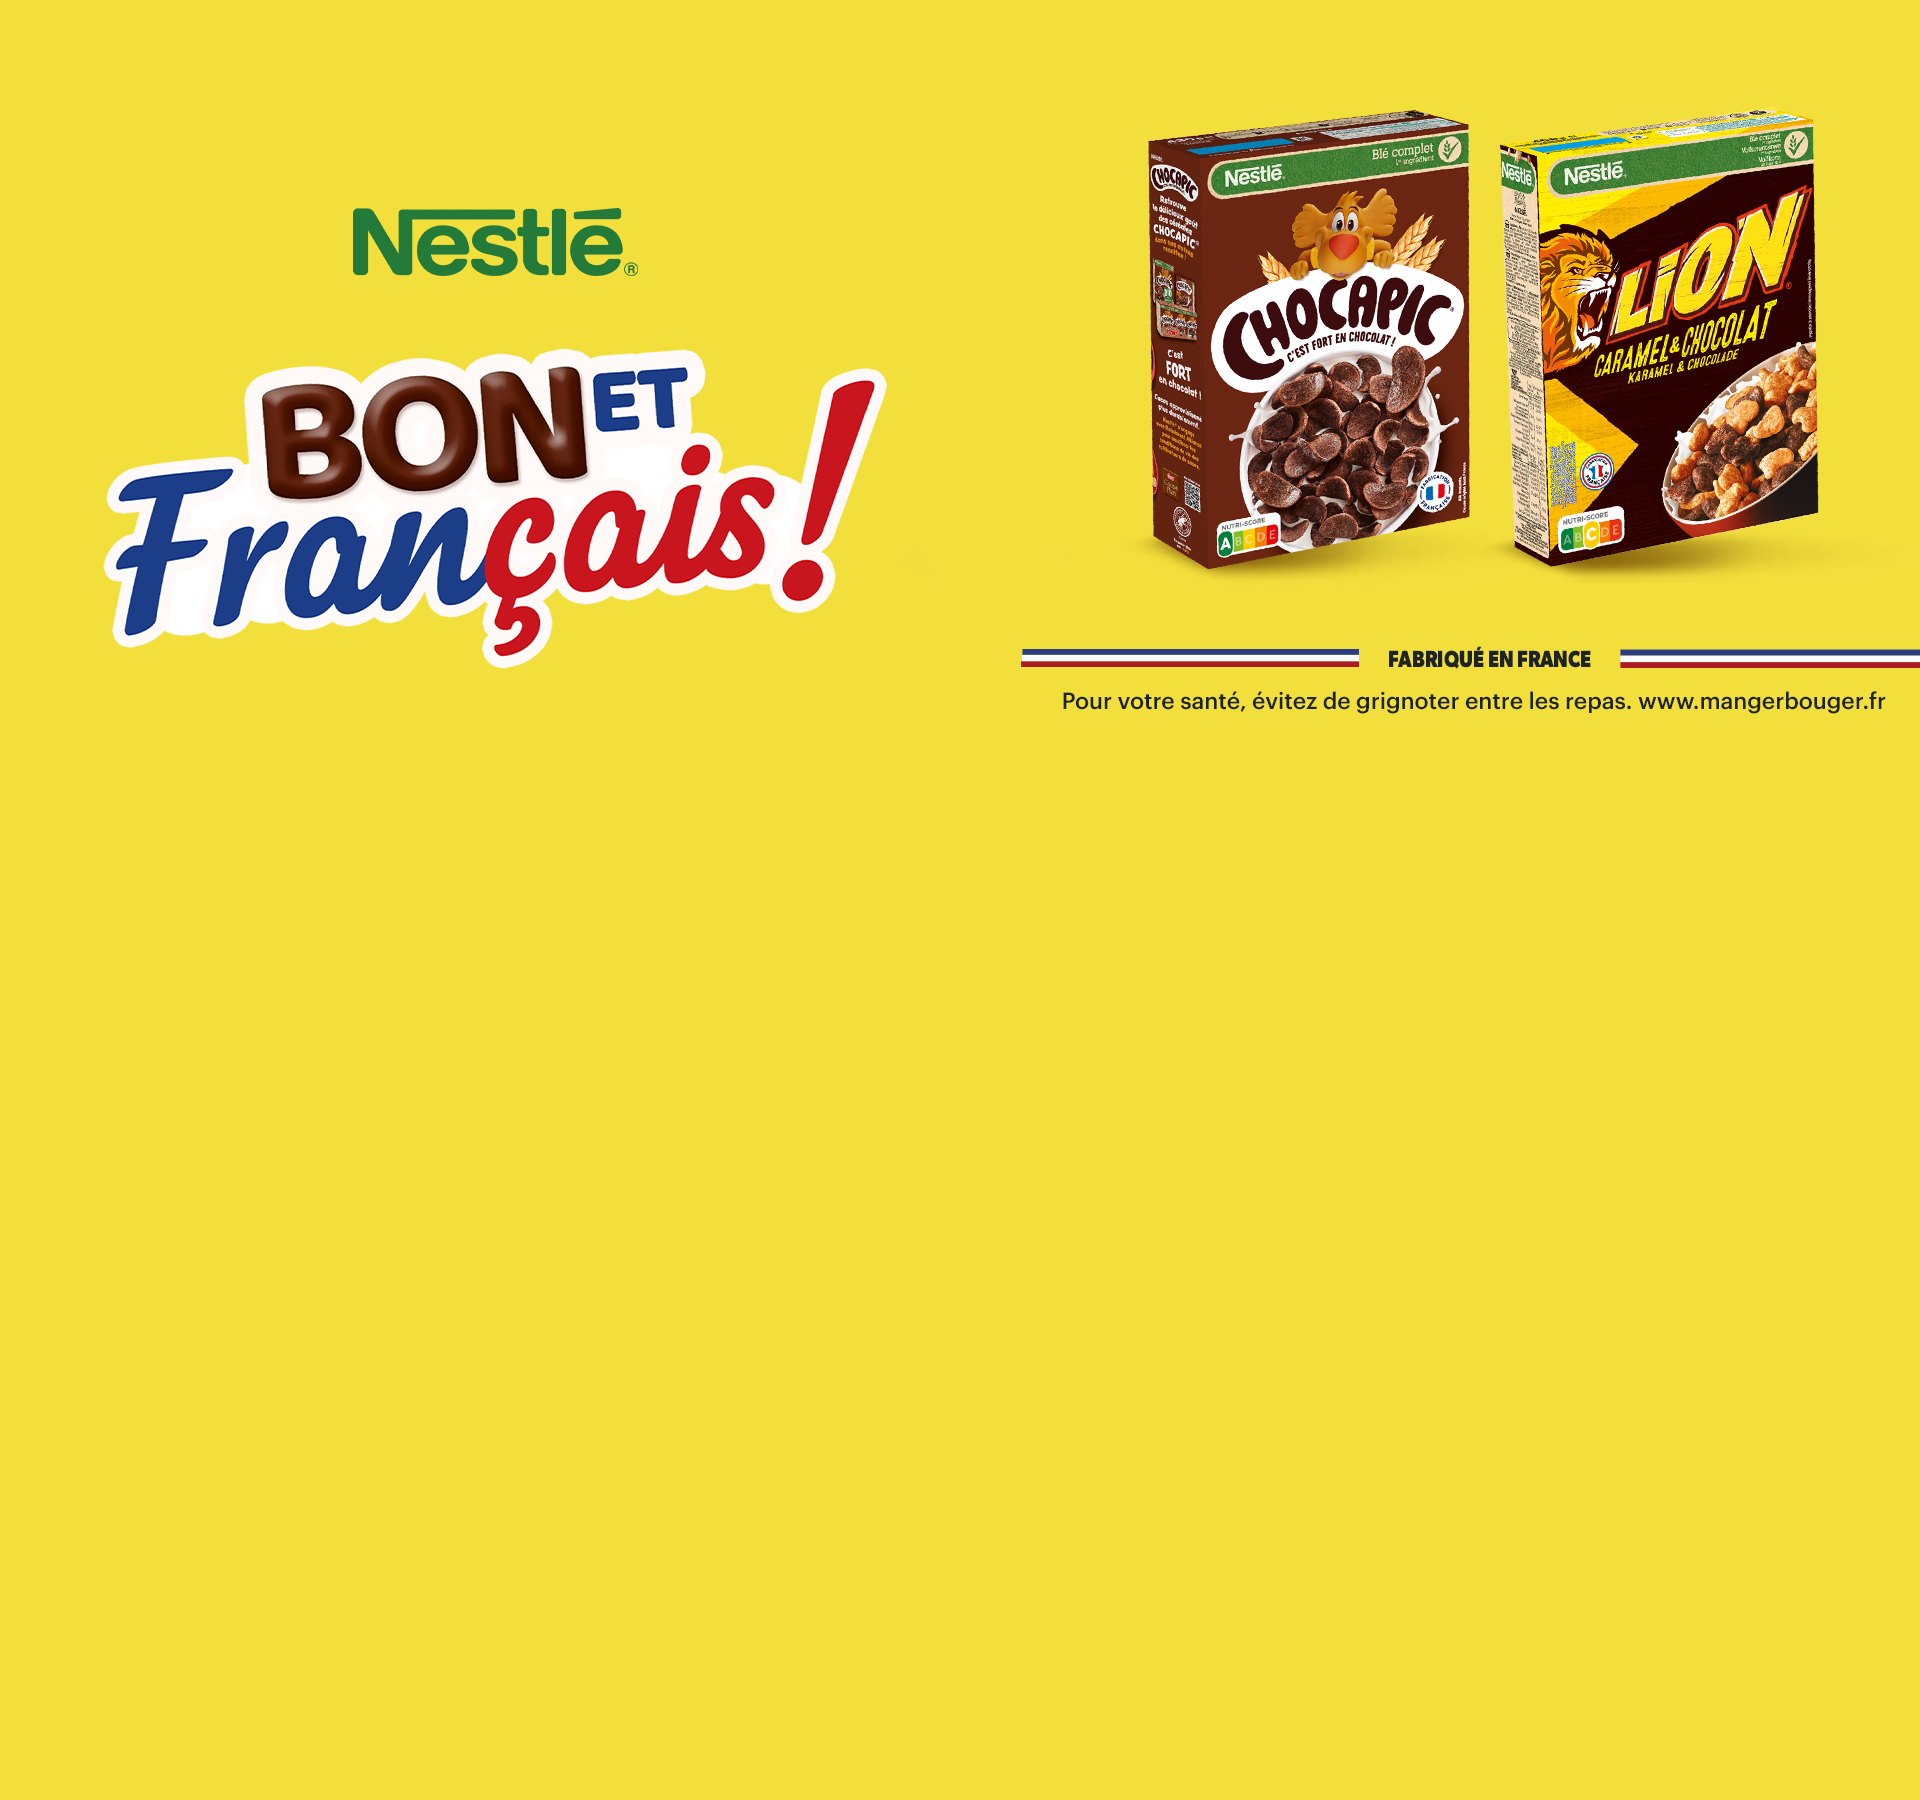 Nestle bon et français!